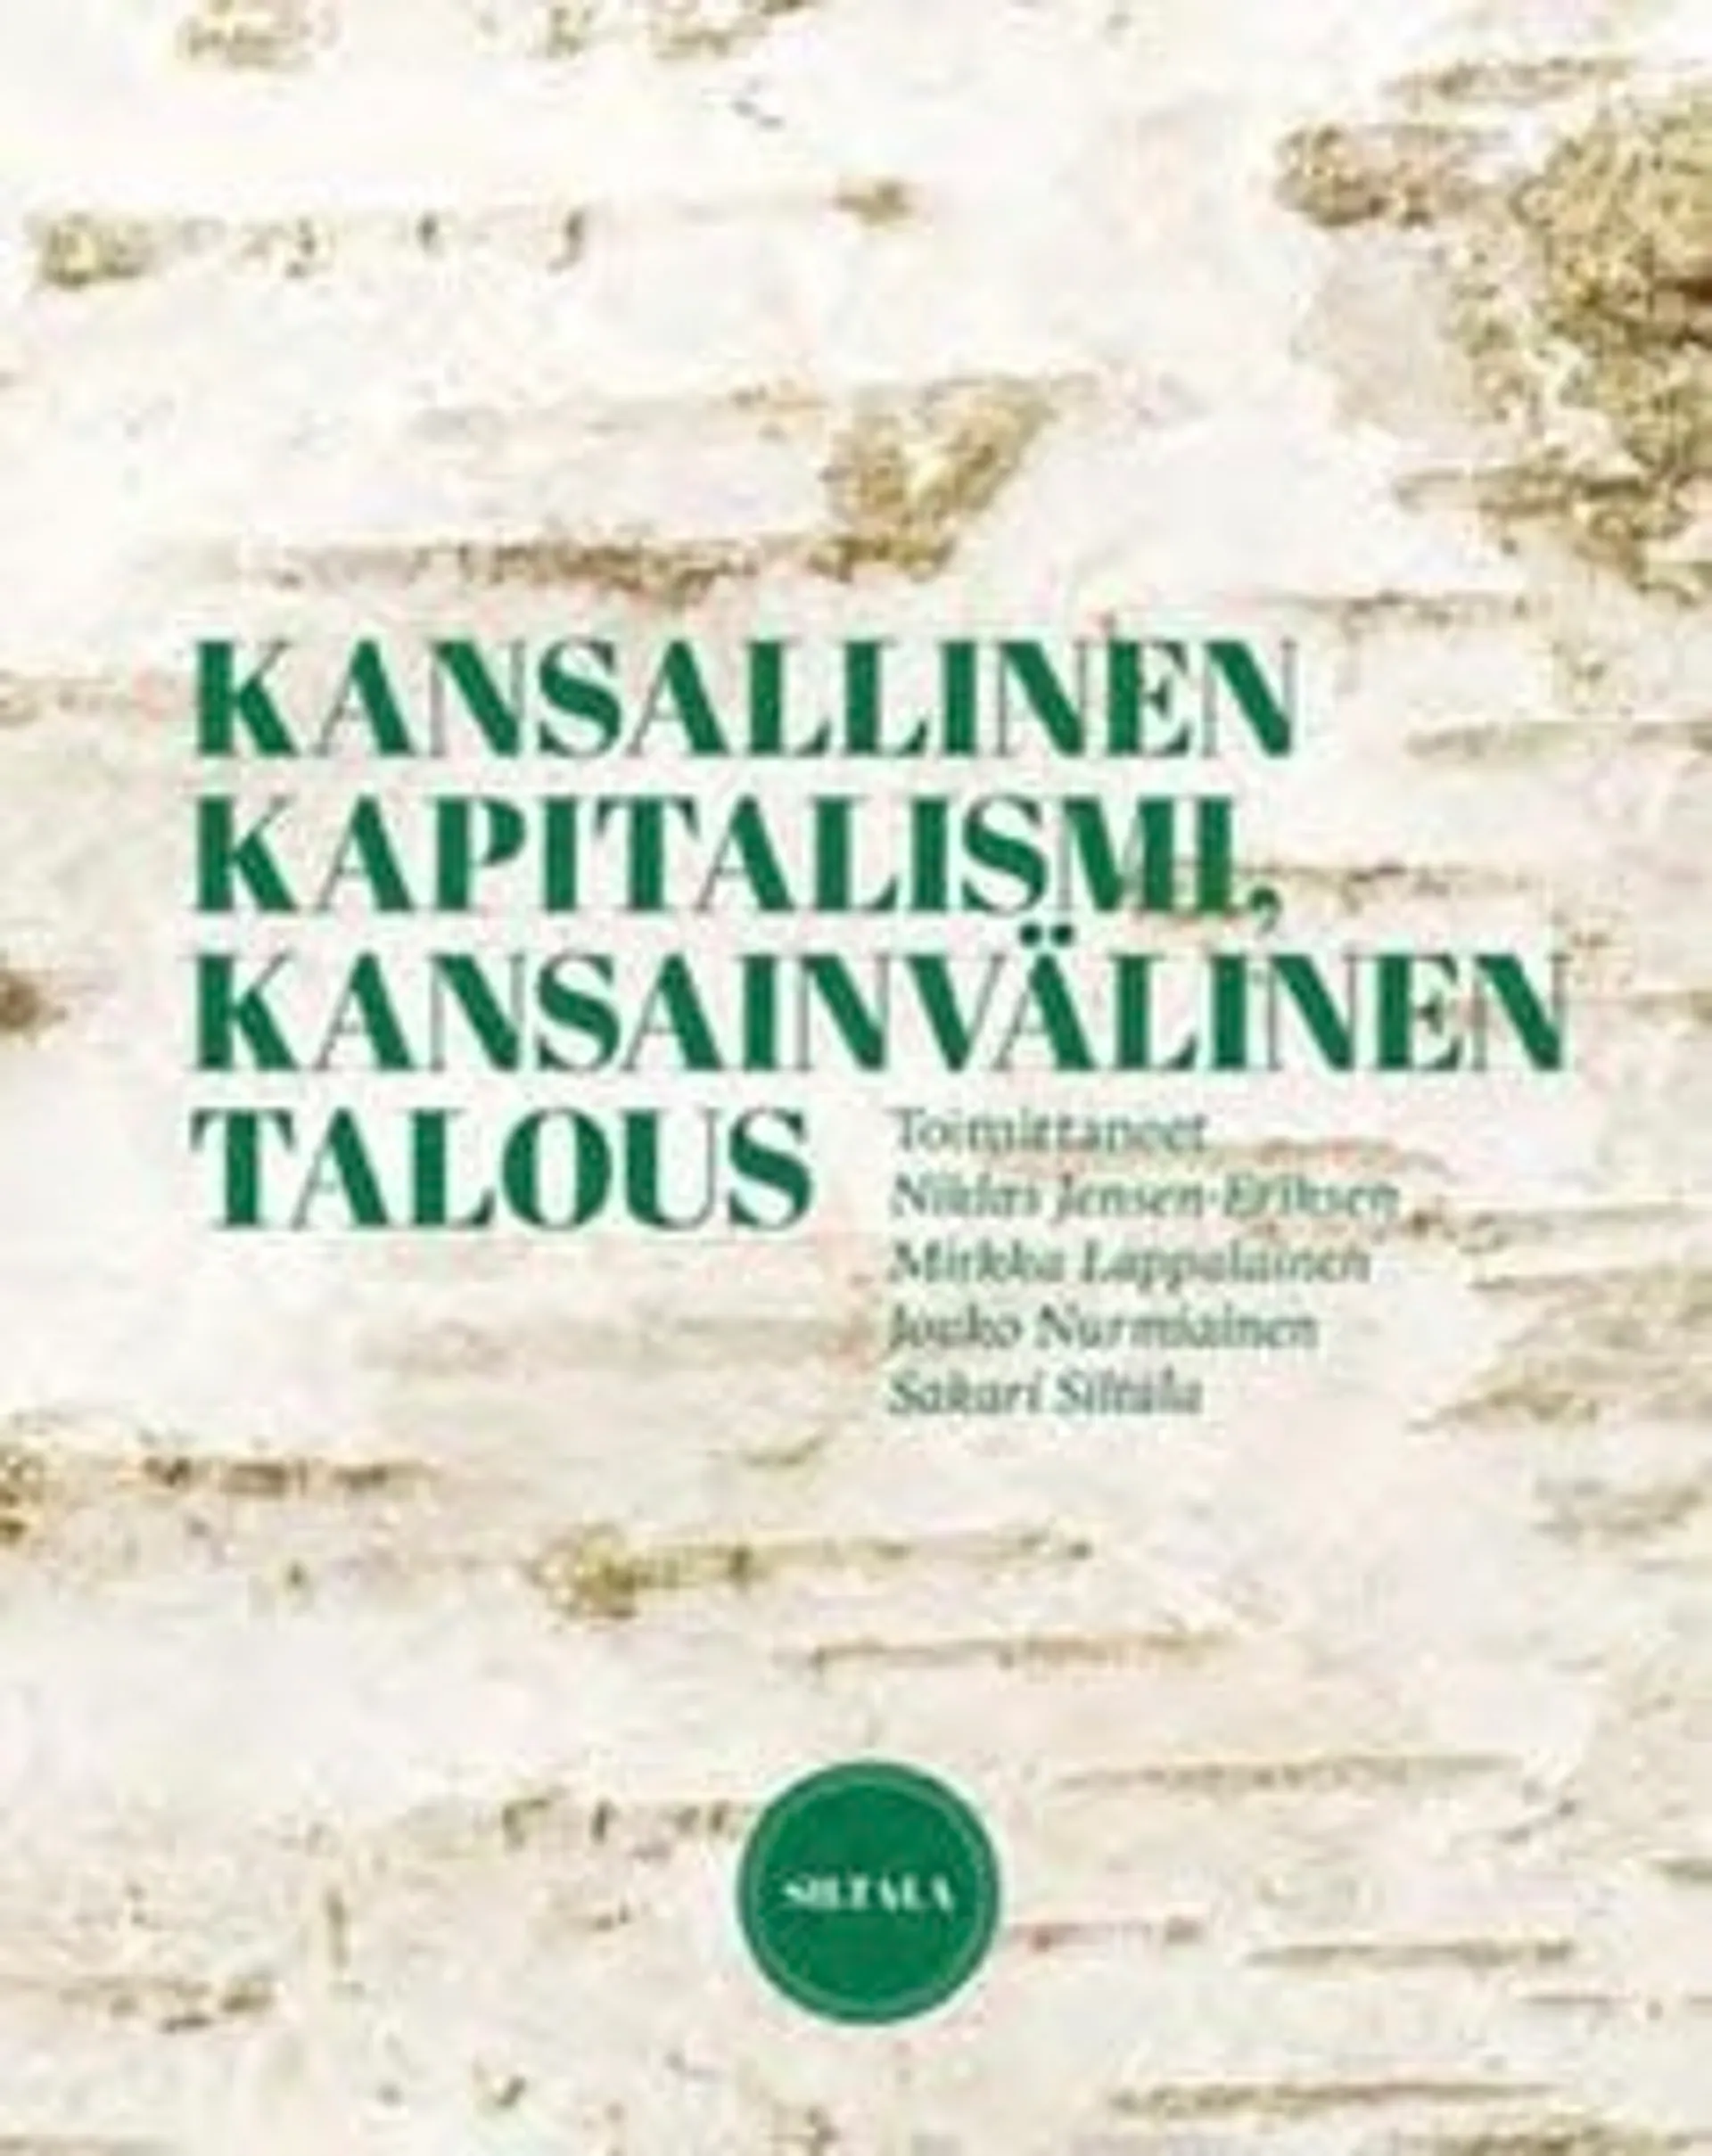 Jensen-Eriksen, Kansallinen kapitalismi, kansainvälinen talous